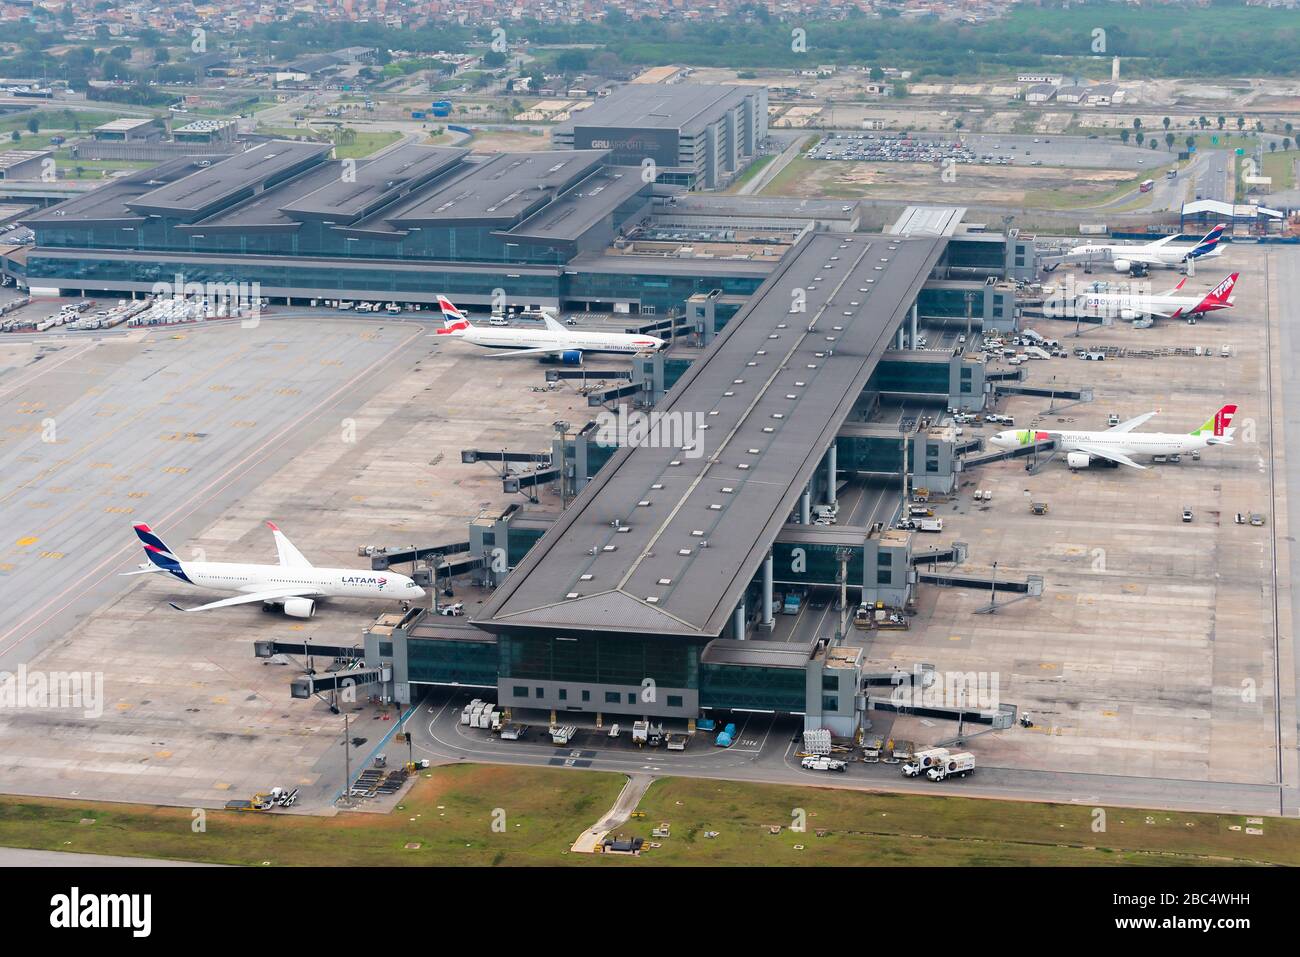 Terminal 3 des internationalen Flughafens Sao Paulo Guarulhos (SBGR) in Brasilien. Luftaufnahme des GRU Airport neues Terminal 3. Flughafen Sao Paulo. Stockfoto